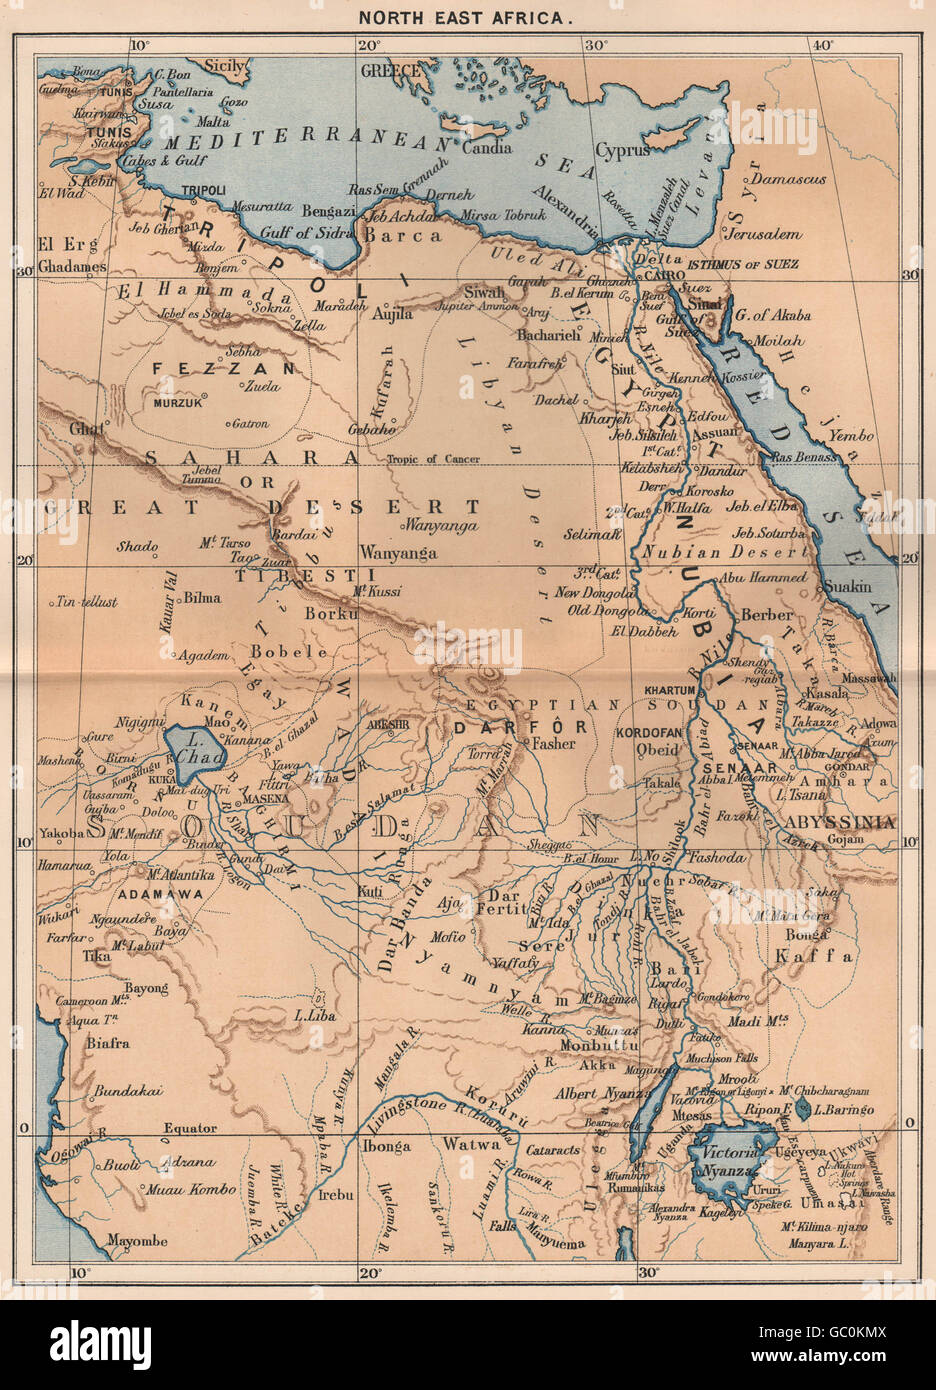 Nord-est de l'Afrique, 1885 carte antique Banque D'Images